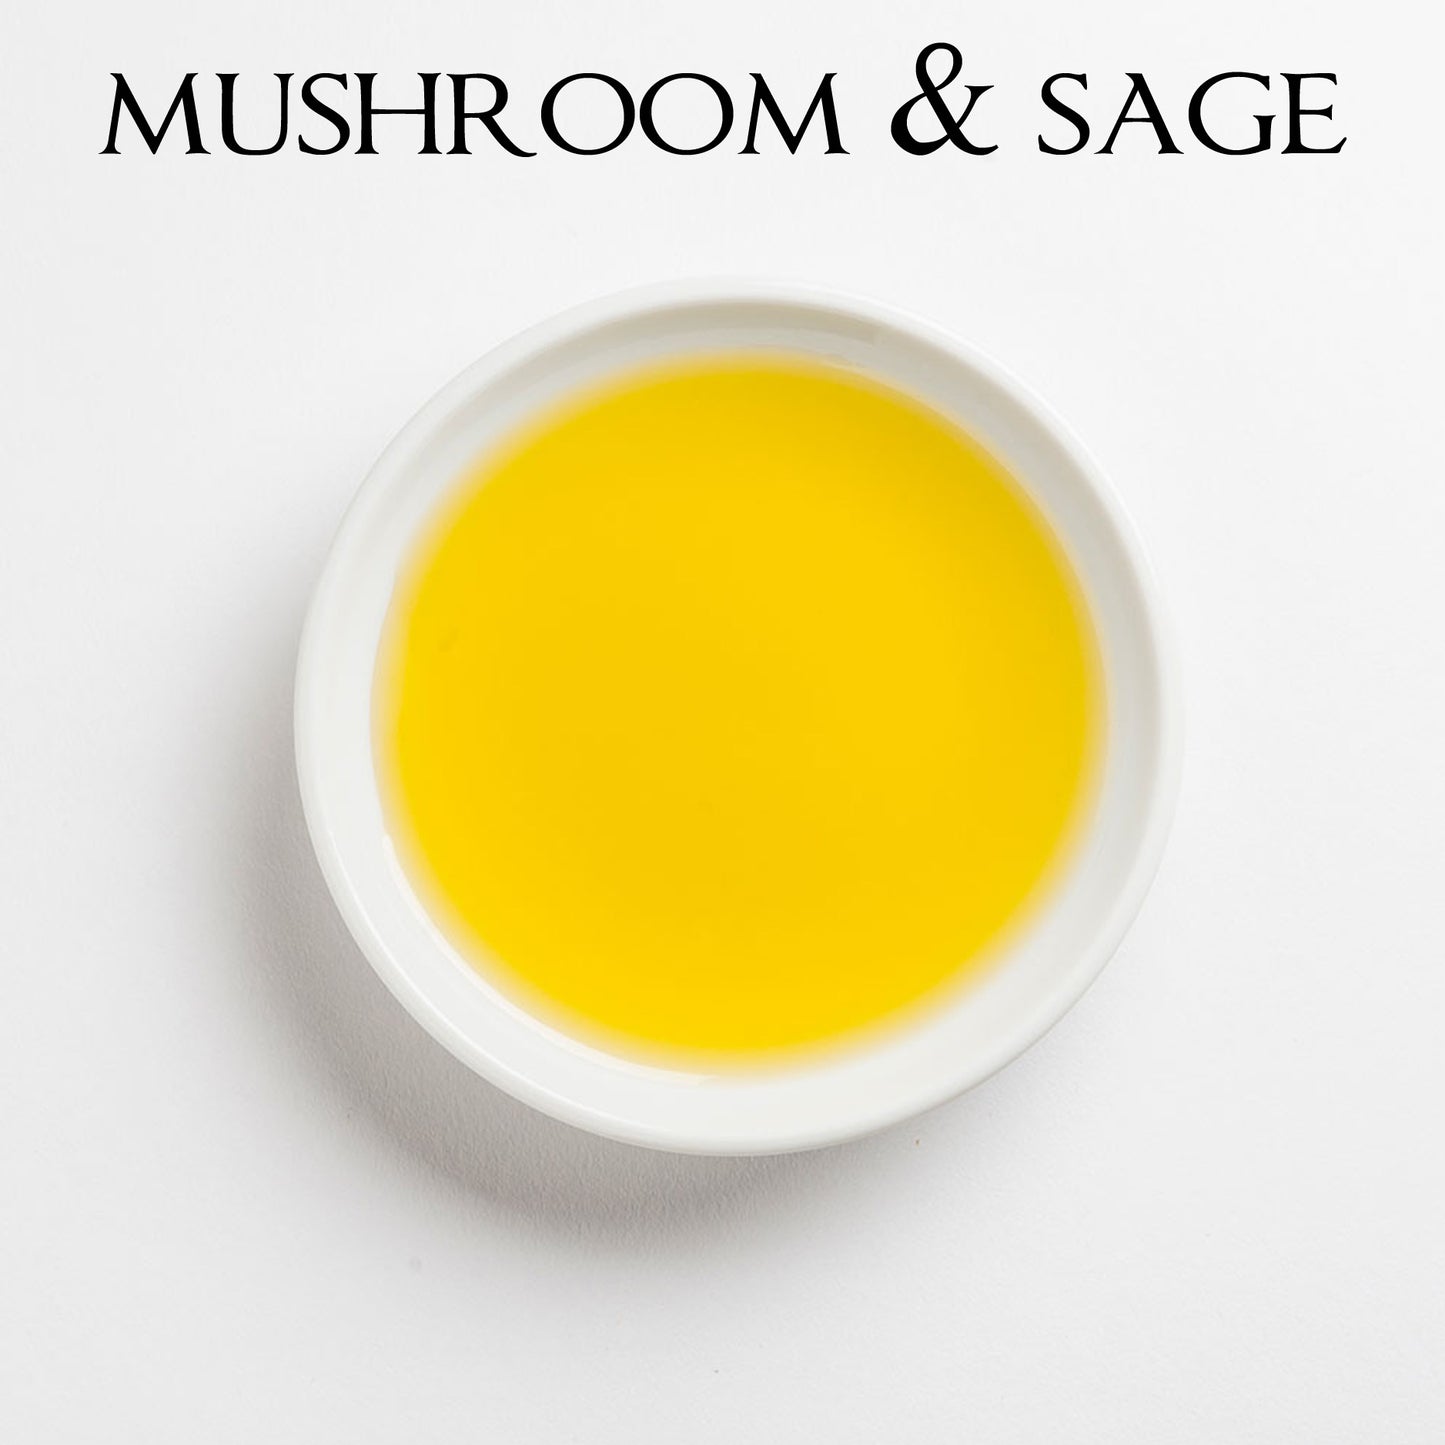 WILD MUSHROOM & SAGE Infused Olive Oil - Spain/Chile